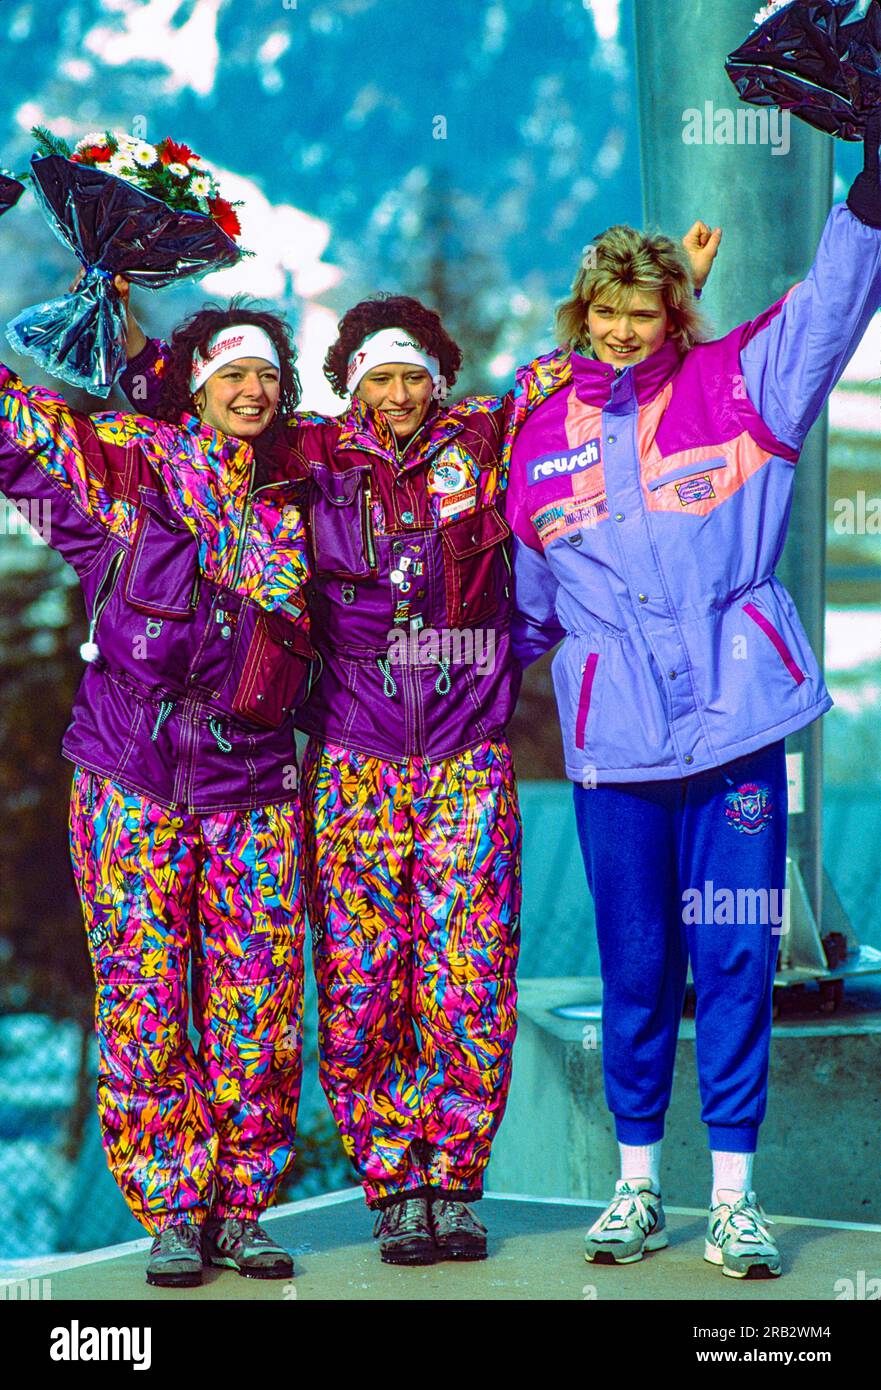 Doris Neuner (AUT) (C) Goldmedaillengewinnerin, Olympiameisterin mit ihrer Schwester Angelika Neuner (AUT) (L) Silbermedaillengewinnerin und Susi Erdmann (GER) Bronzemedaillengewinnerin, während des Frauen-Singles-Rodelwettbewerbs bei den Olympischen Winterspielen 1992 Stockfoto